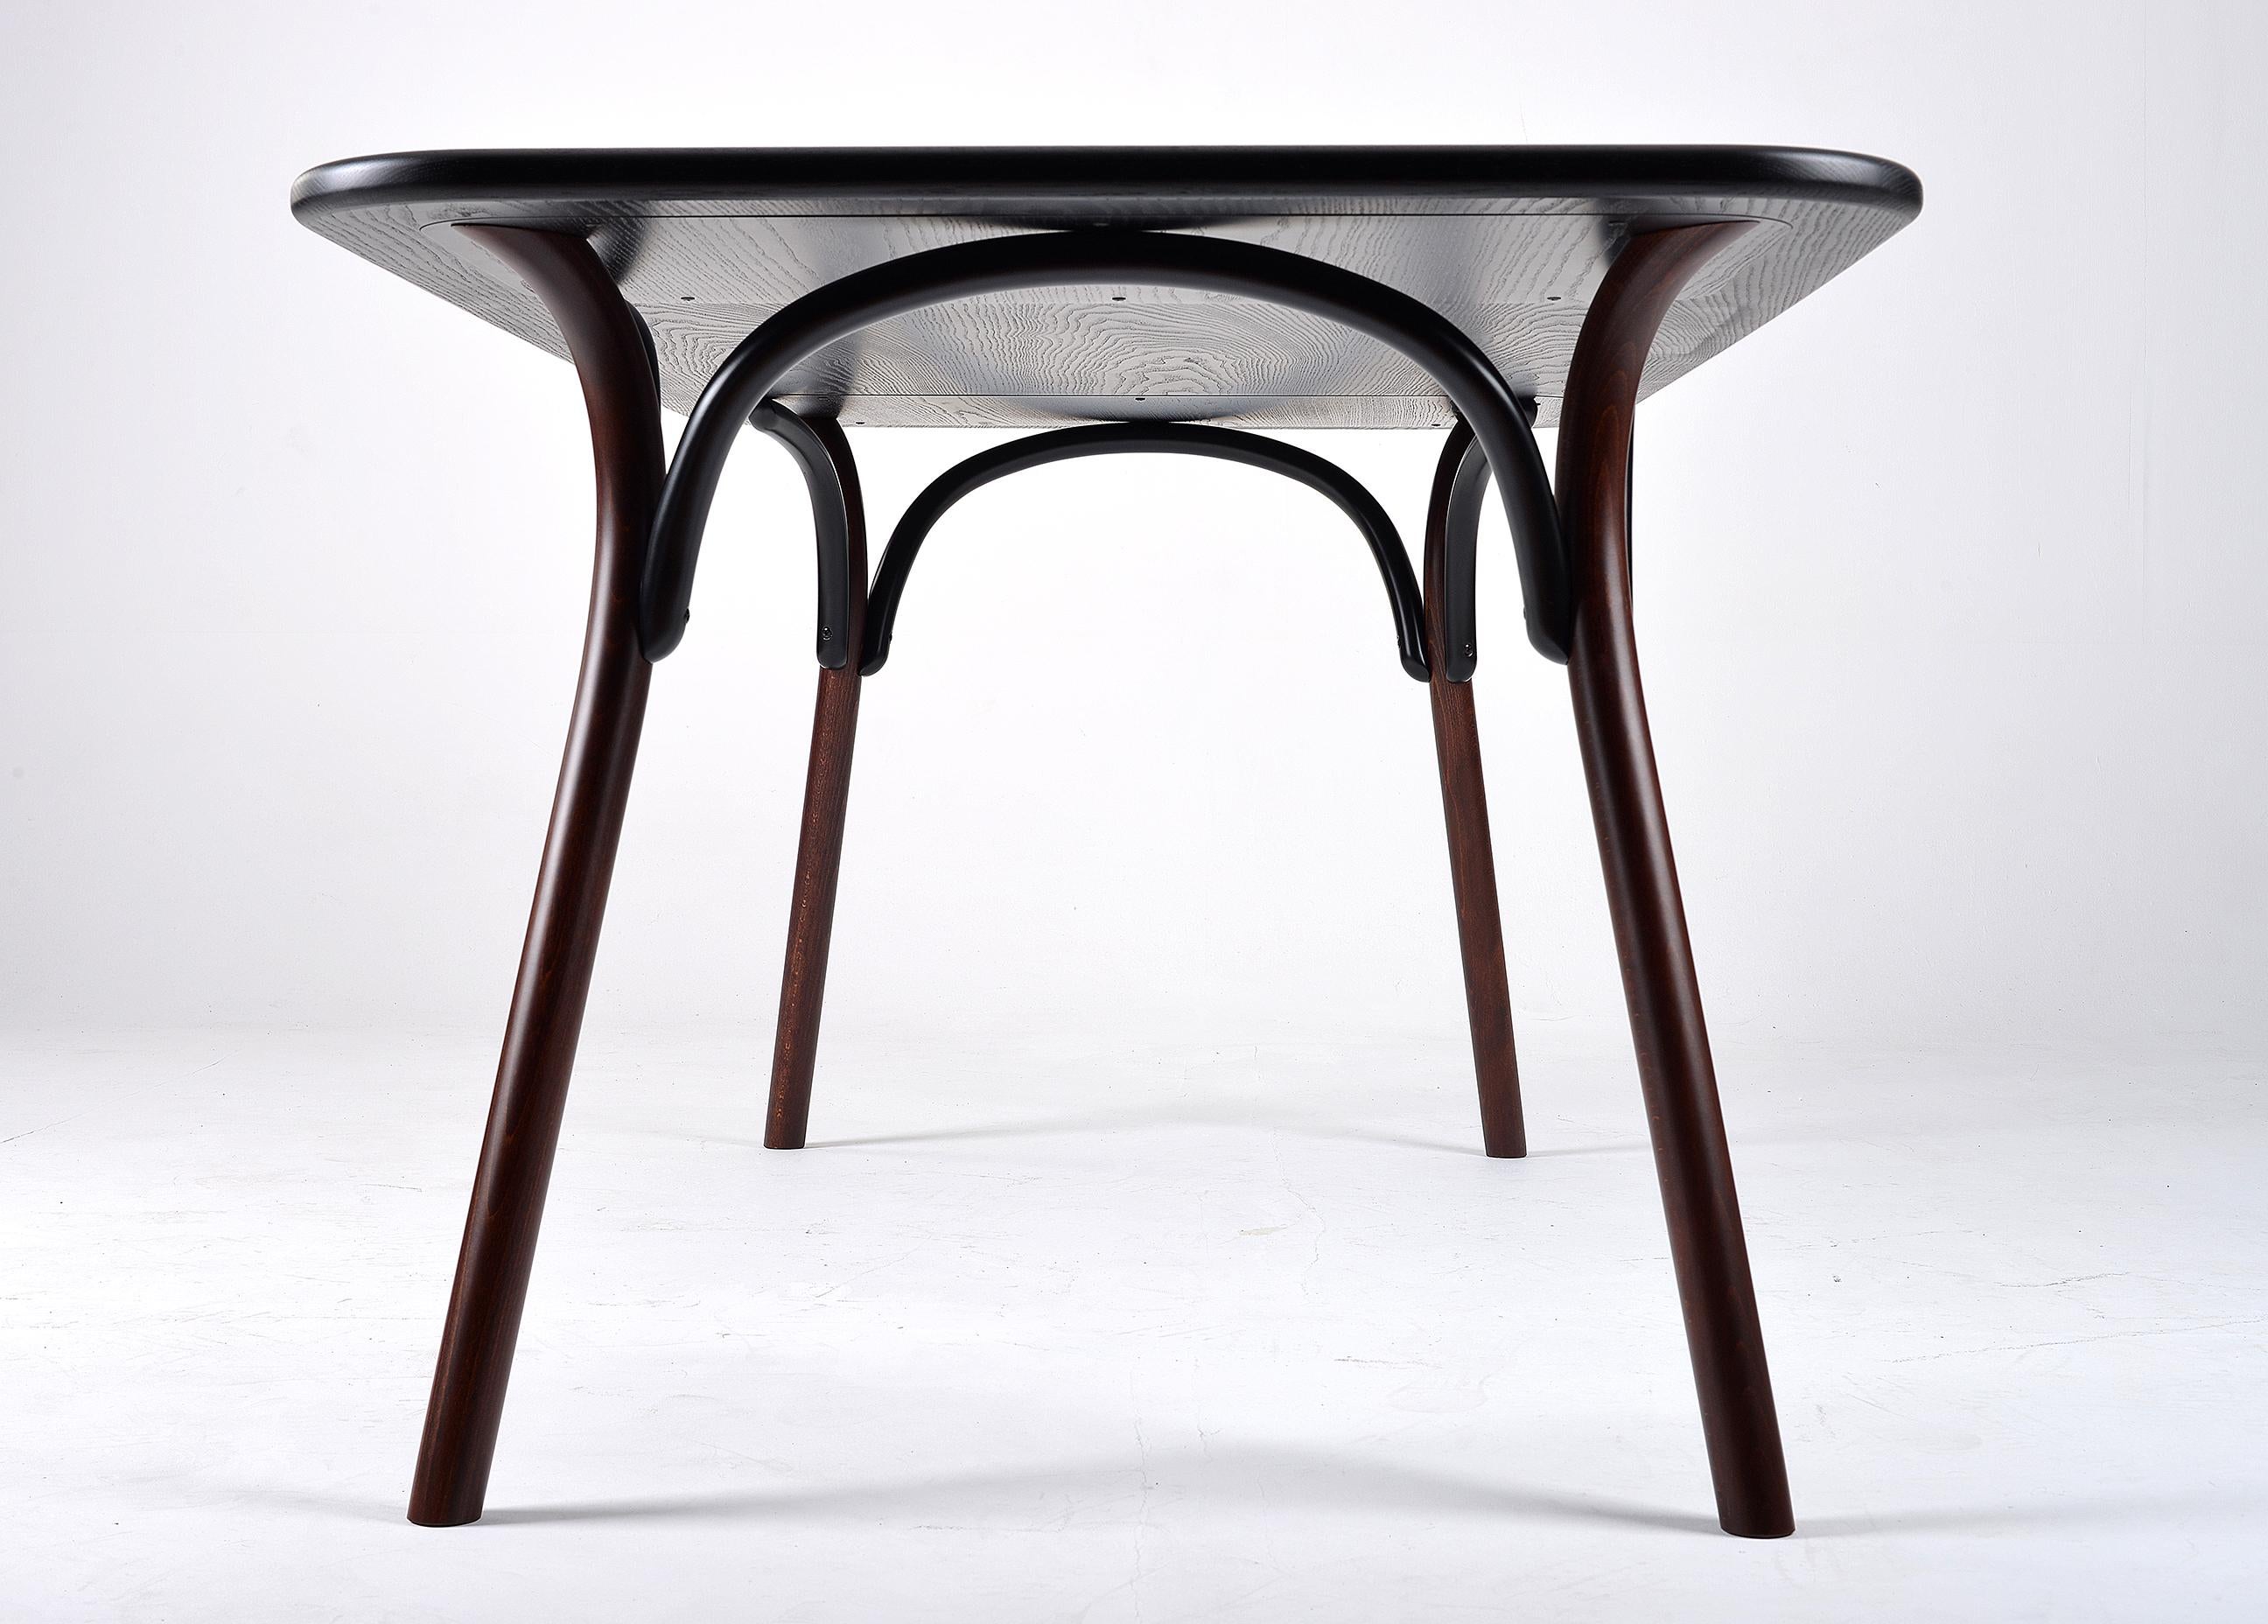 Der von einer Gruppe schwedischer Designer, Front, entworfene Tisch, hat eine dampfgebogene Buchenstruktur, die sein attraktives, leichtes Aussehen mit der Substanz von Massivholz verbindet. Die Platte besteht aus Eschenholzplatten, die in zwei